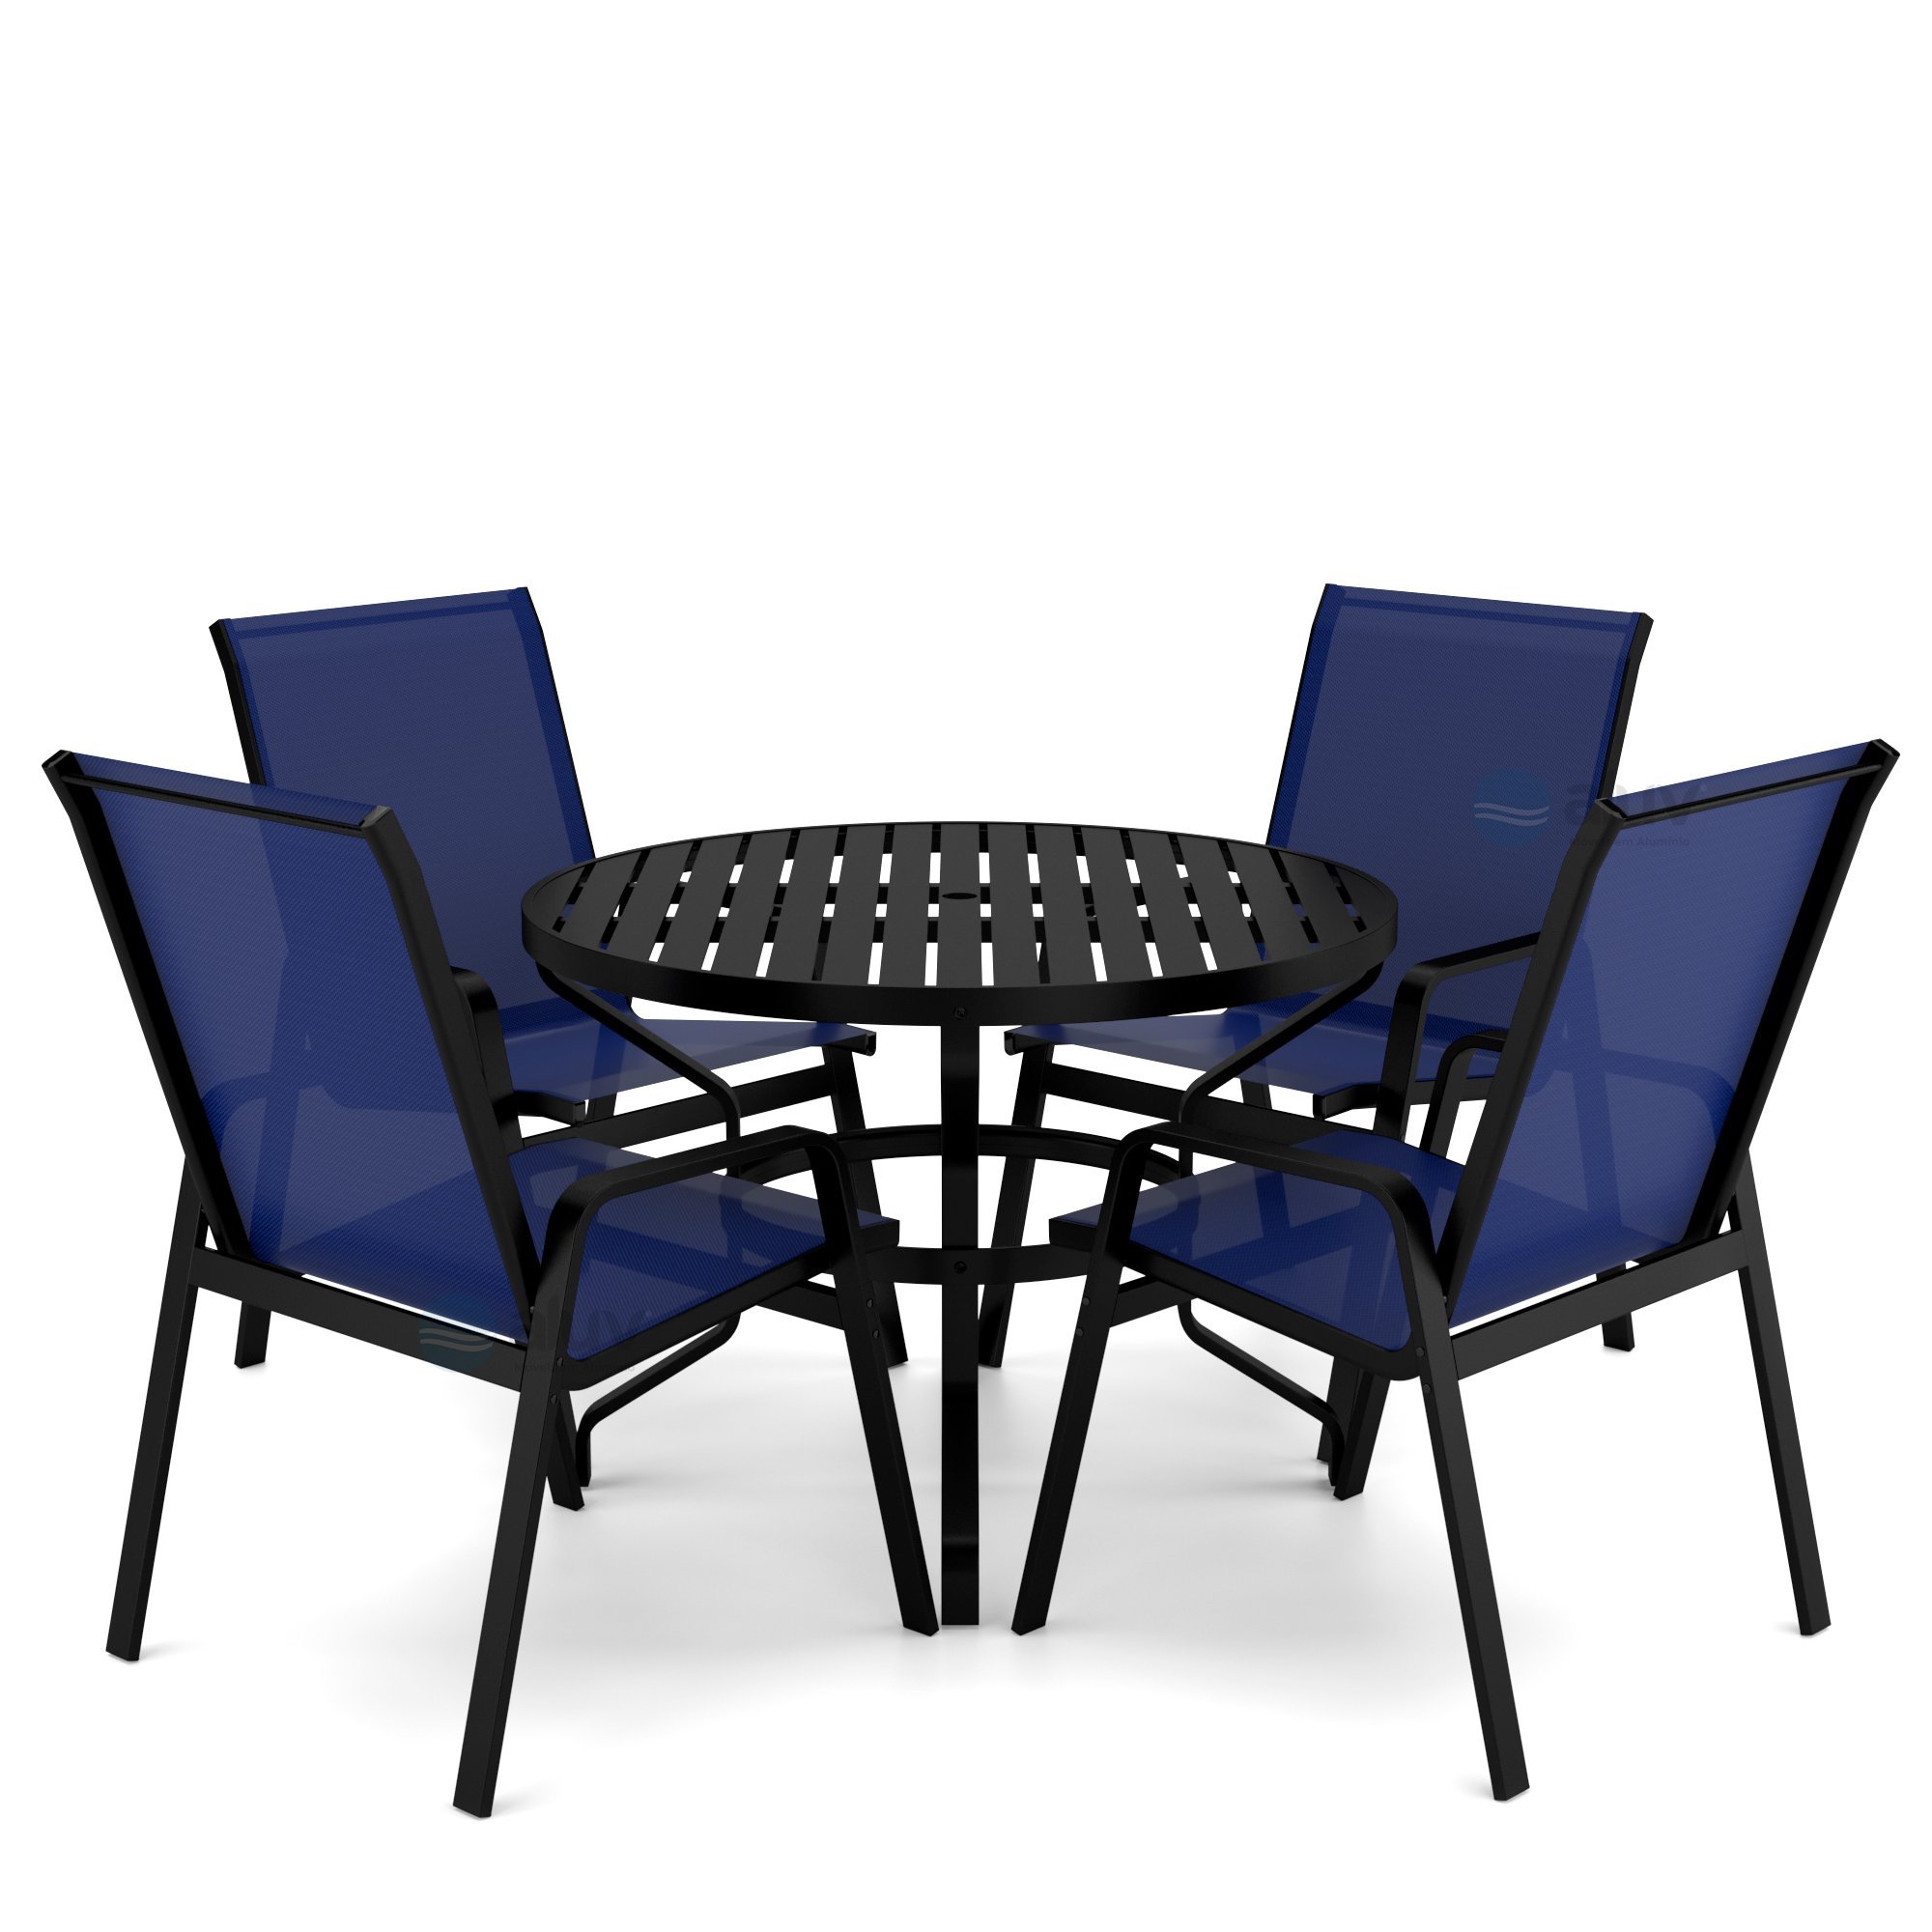 Mesa 4 cadeiras Ripado Piscina Alumínio Preto e Tela Azul - 1